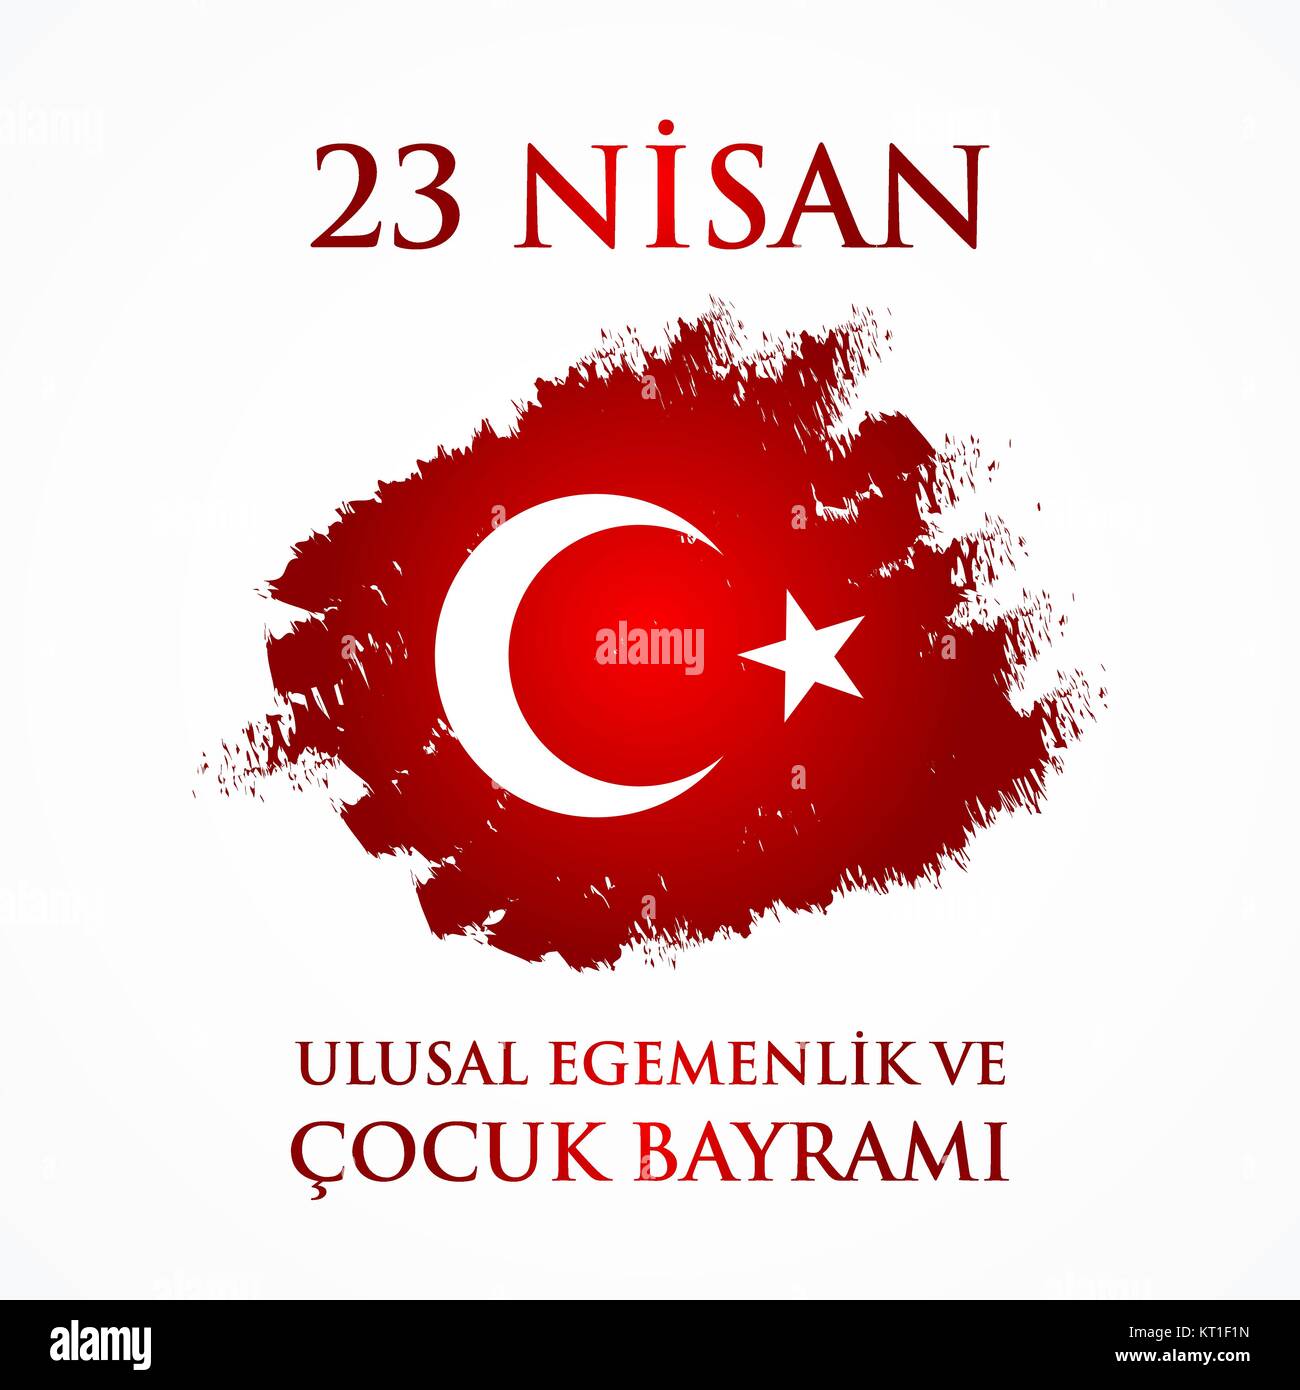 23 Nisan uluslar egemenlik ve cocuk baryrami. Traduzione: bagno turco 23 Aprile la sovranità nazionale e la Giornata per i bambini. Illustrazione Vettoriale. Illustrazione Vettoriale